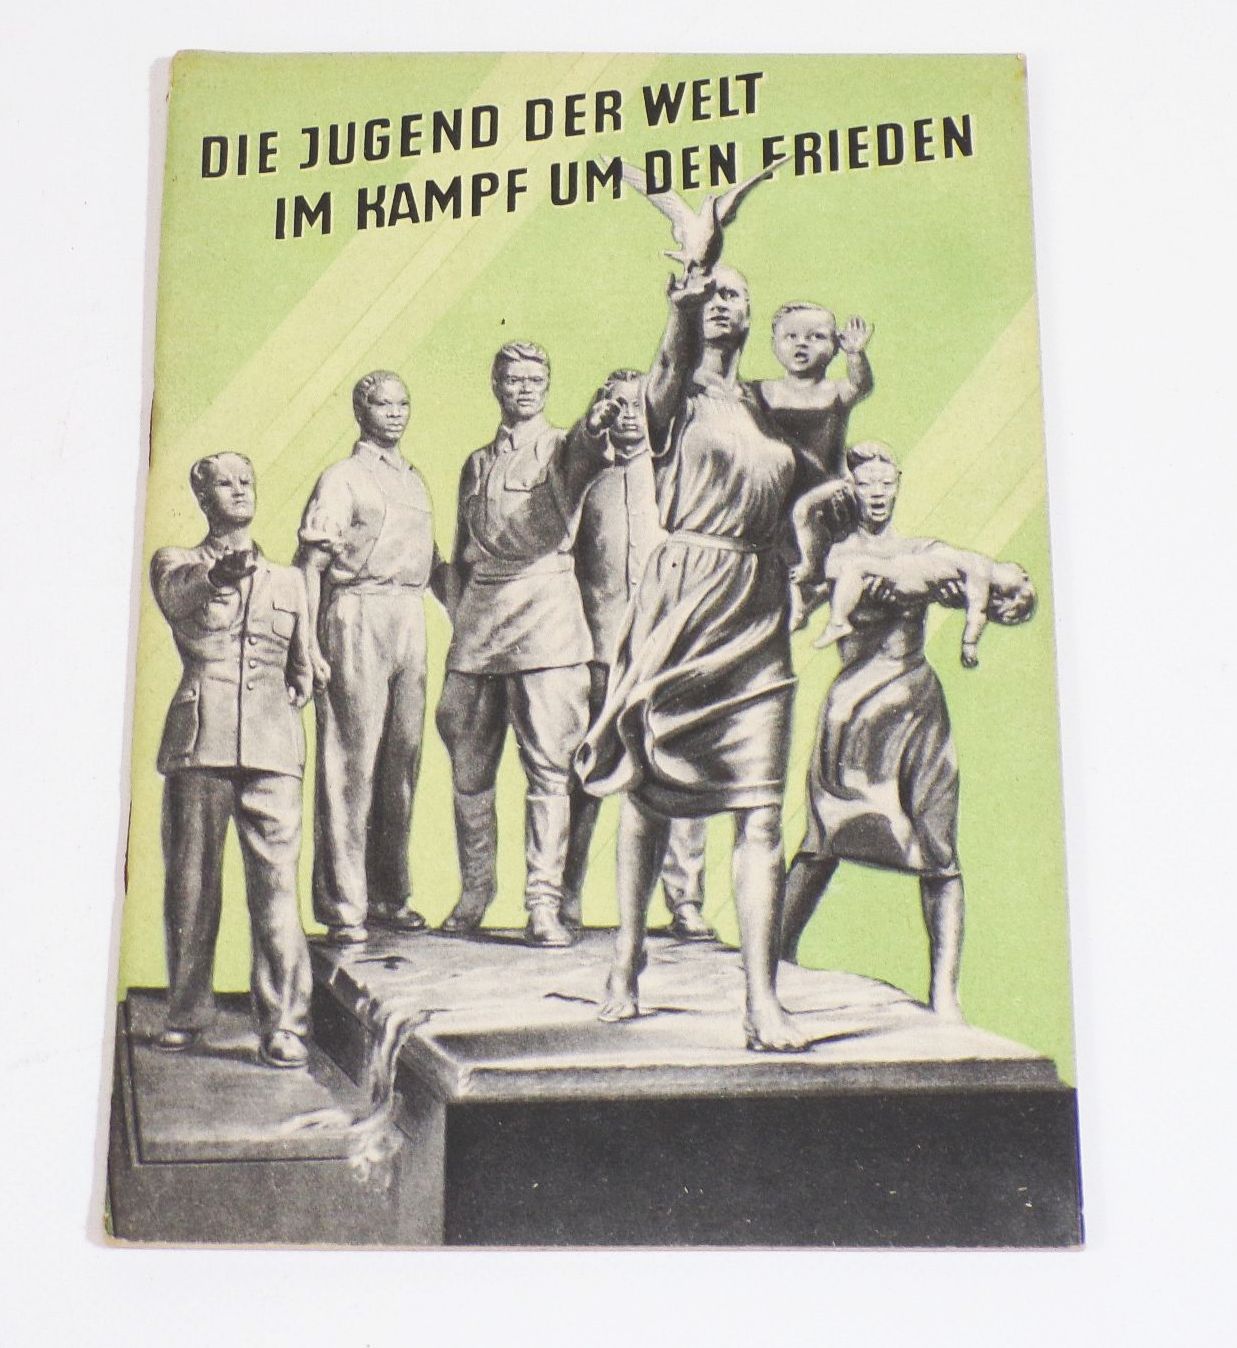 Die Jugend der Welt im Kamfpf um den Frieden 1951 DDR Propaganda Heft